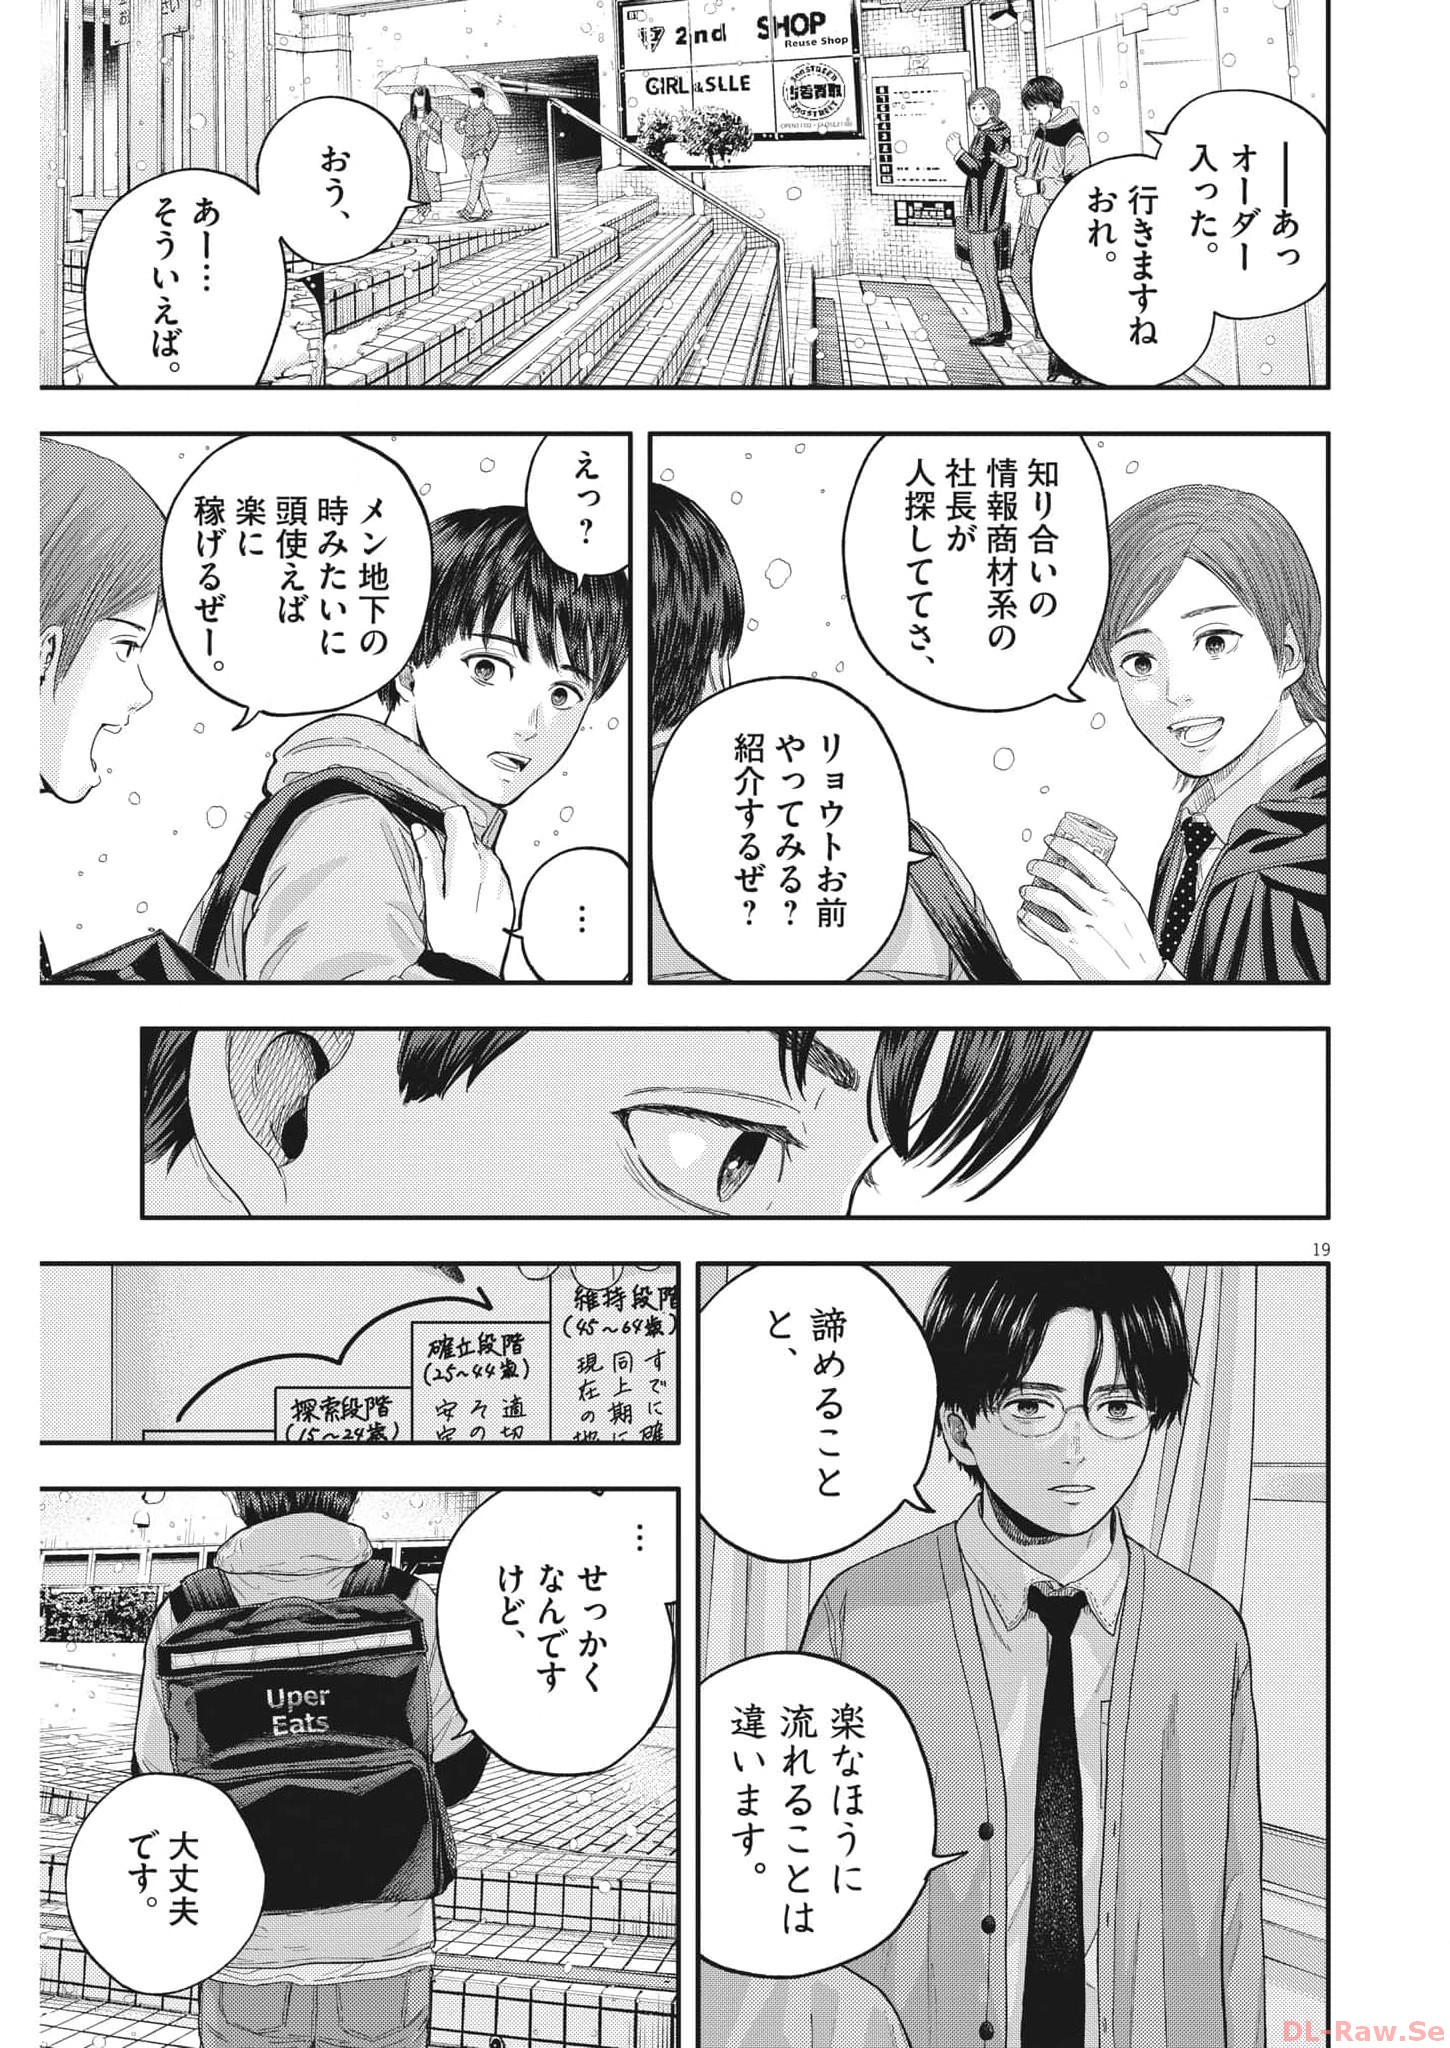 Yumenashi-sensei no Shinroshidou - Chapter 18 - Page 19